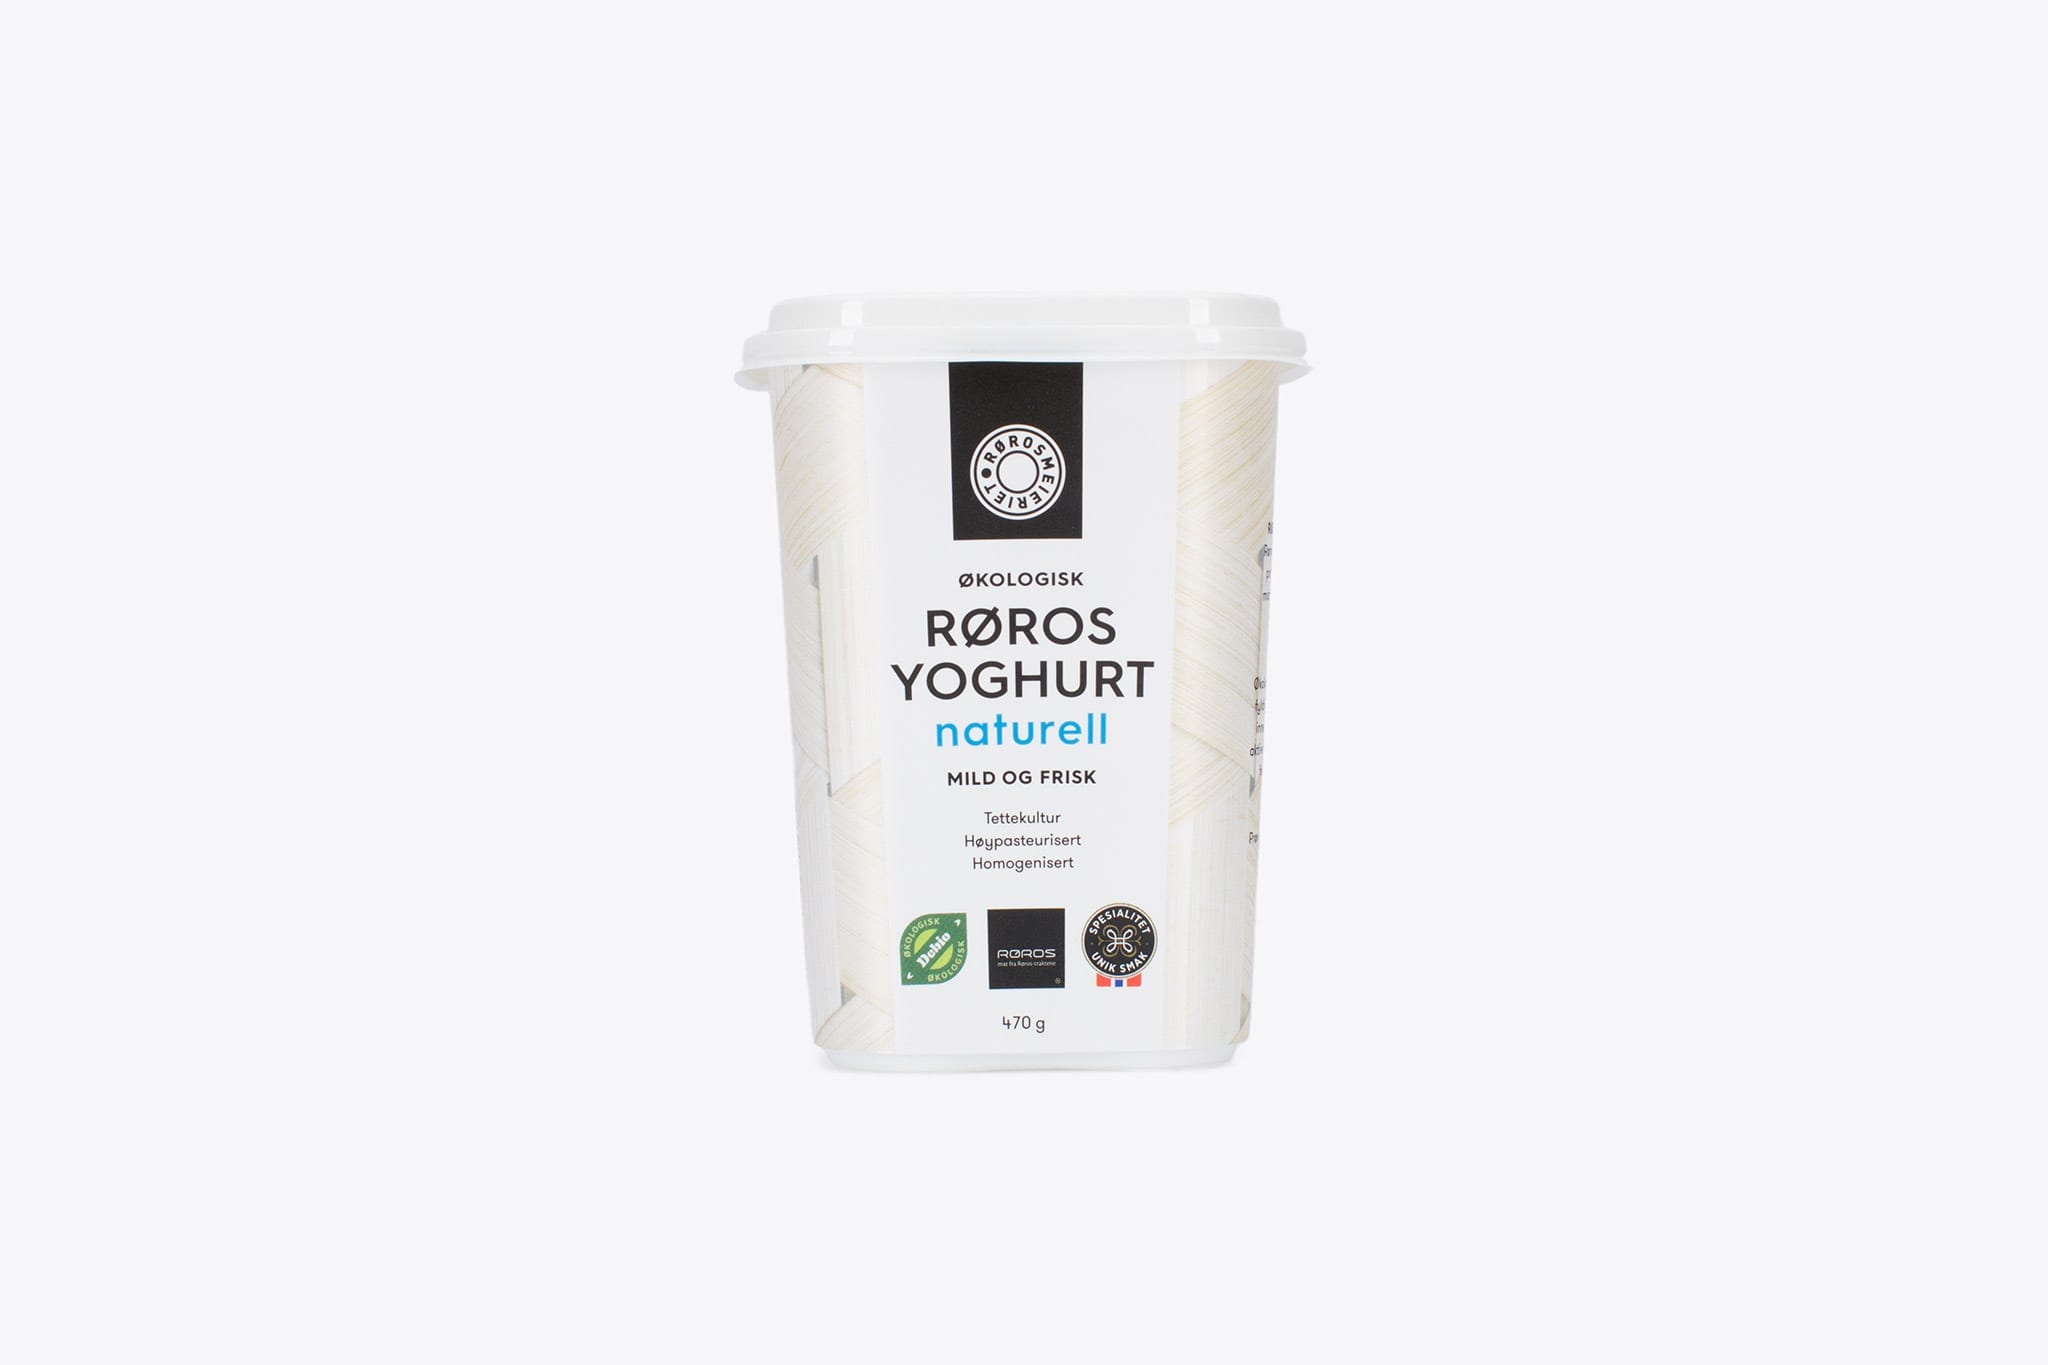 Økologisk Røros Yoghurt Naturell